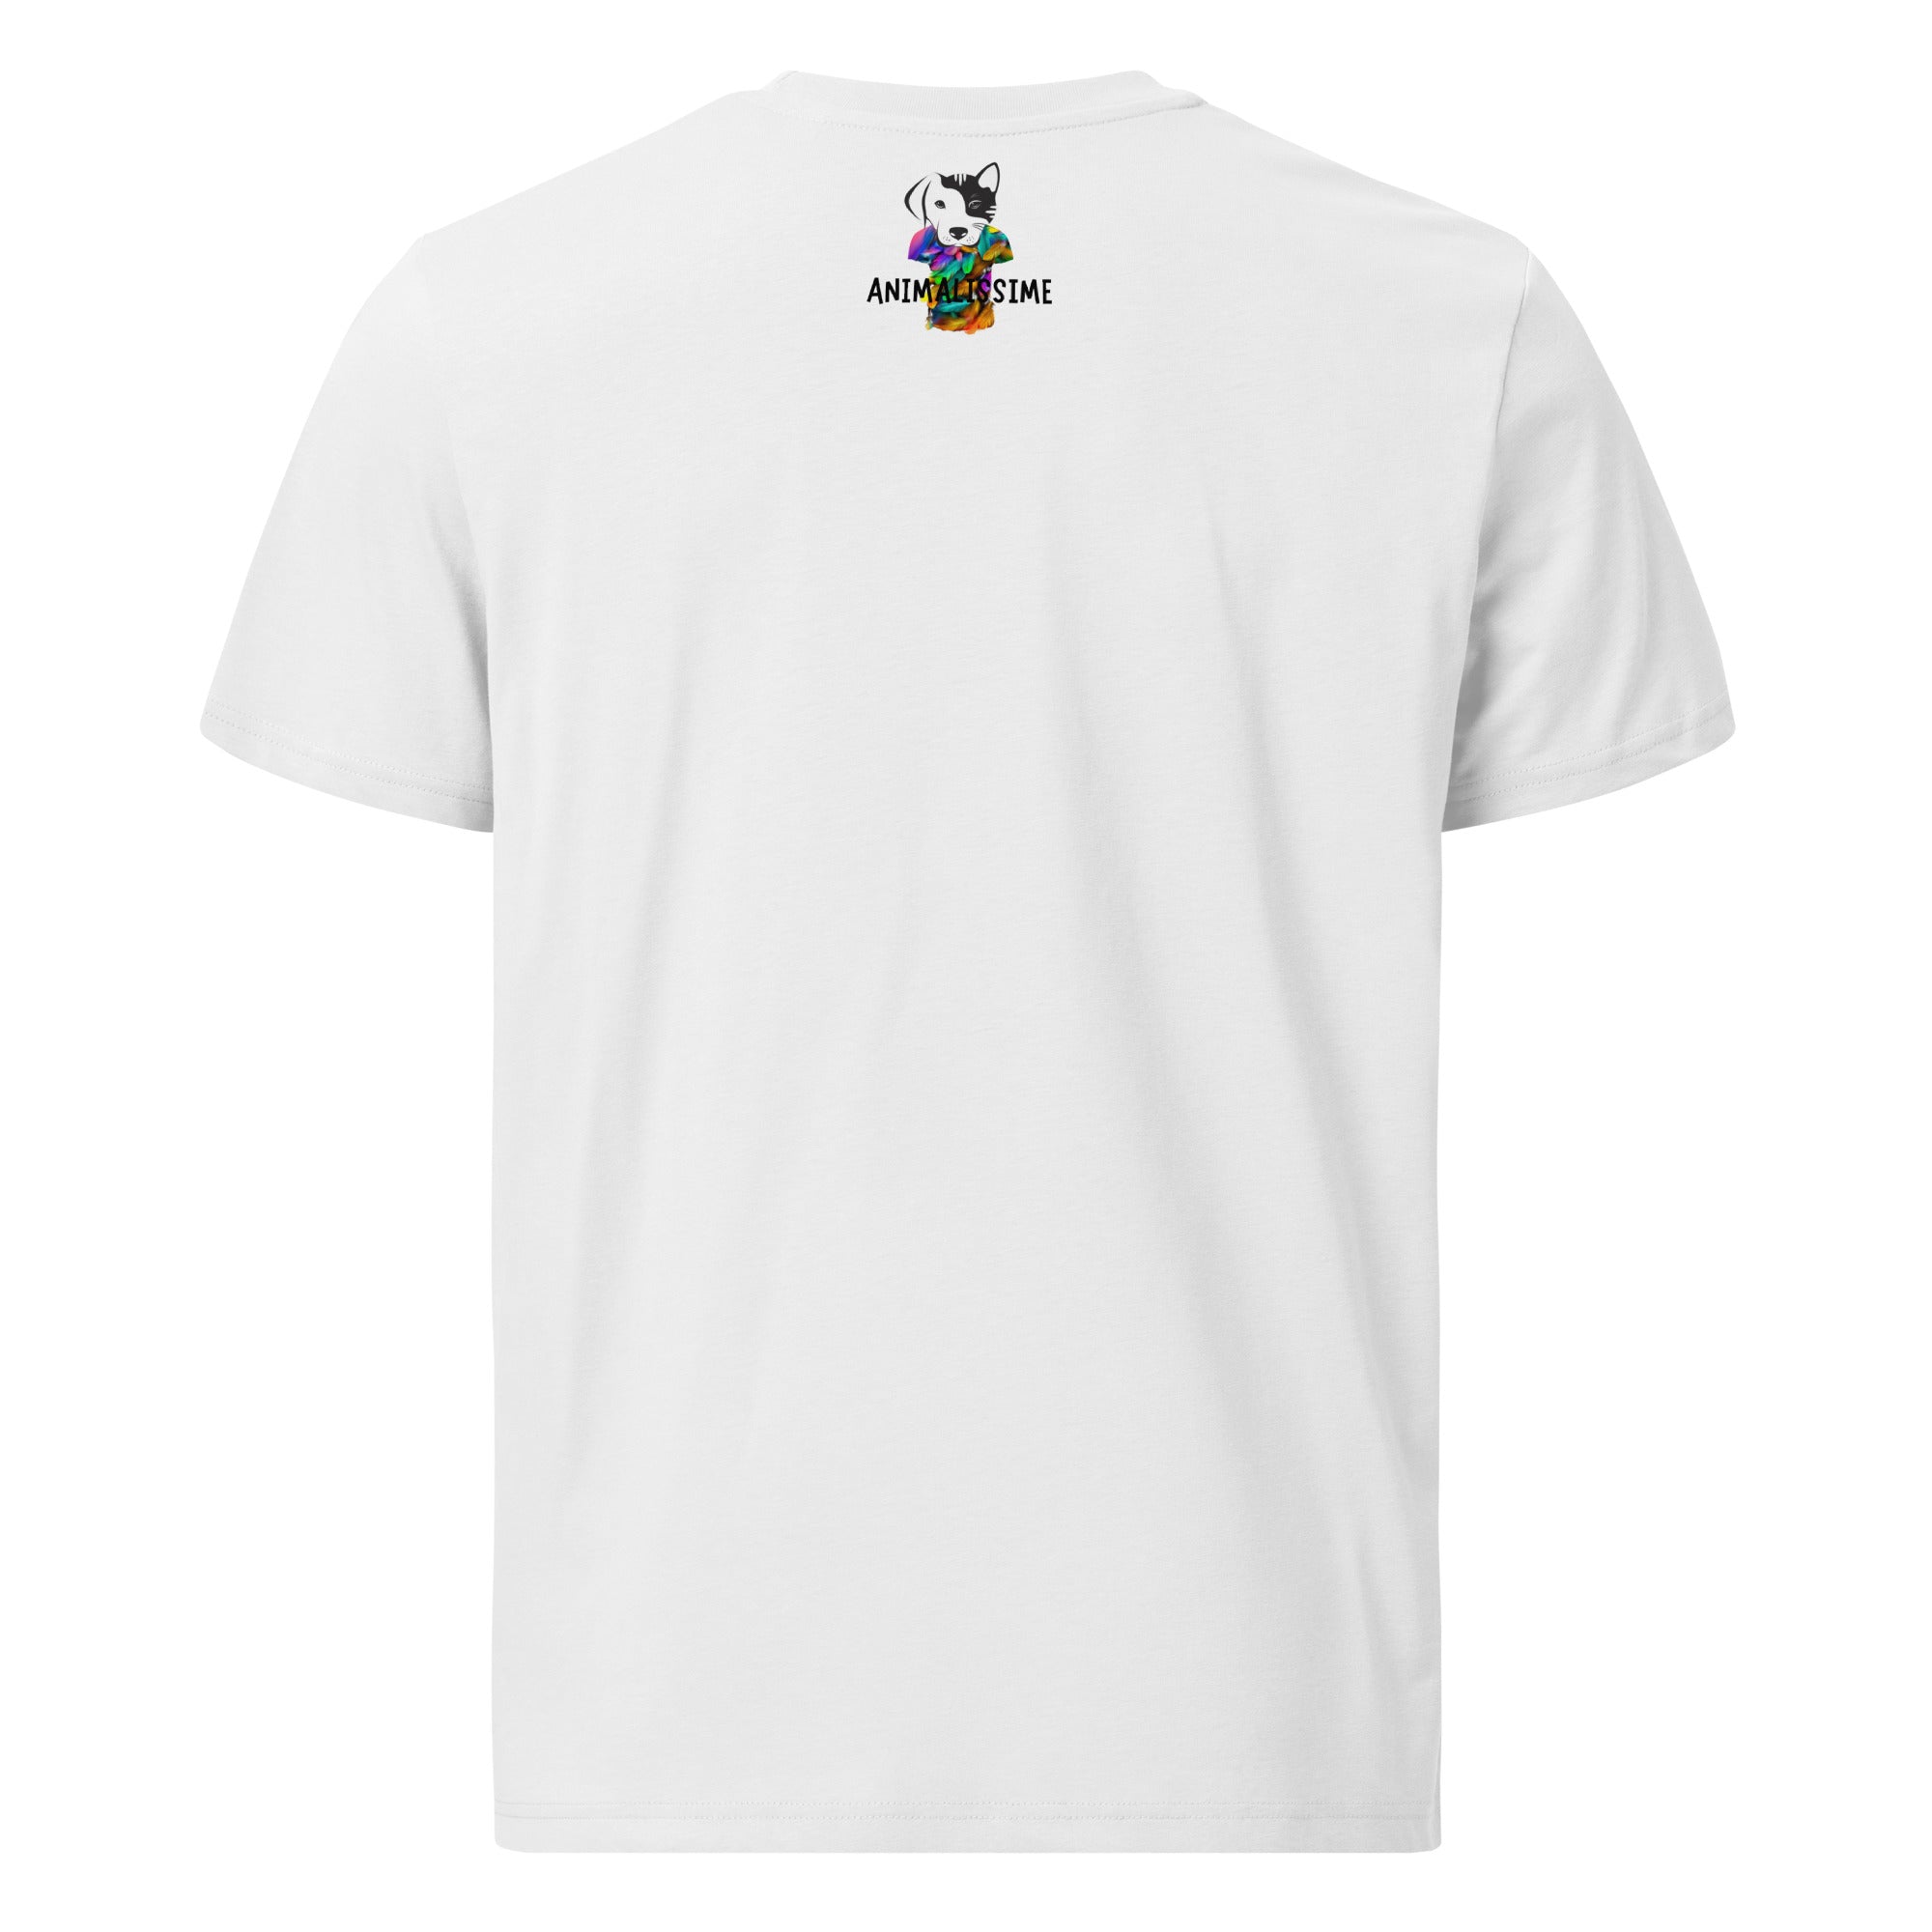 Animalissime - Unisex T-shirt